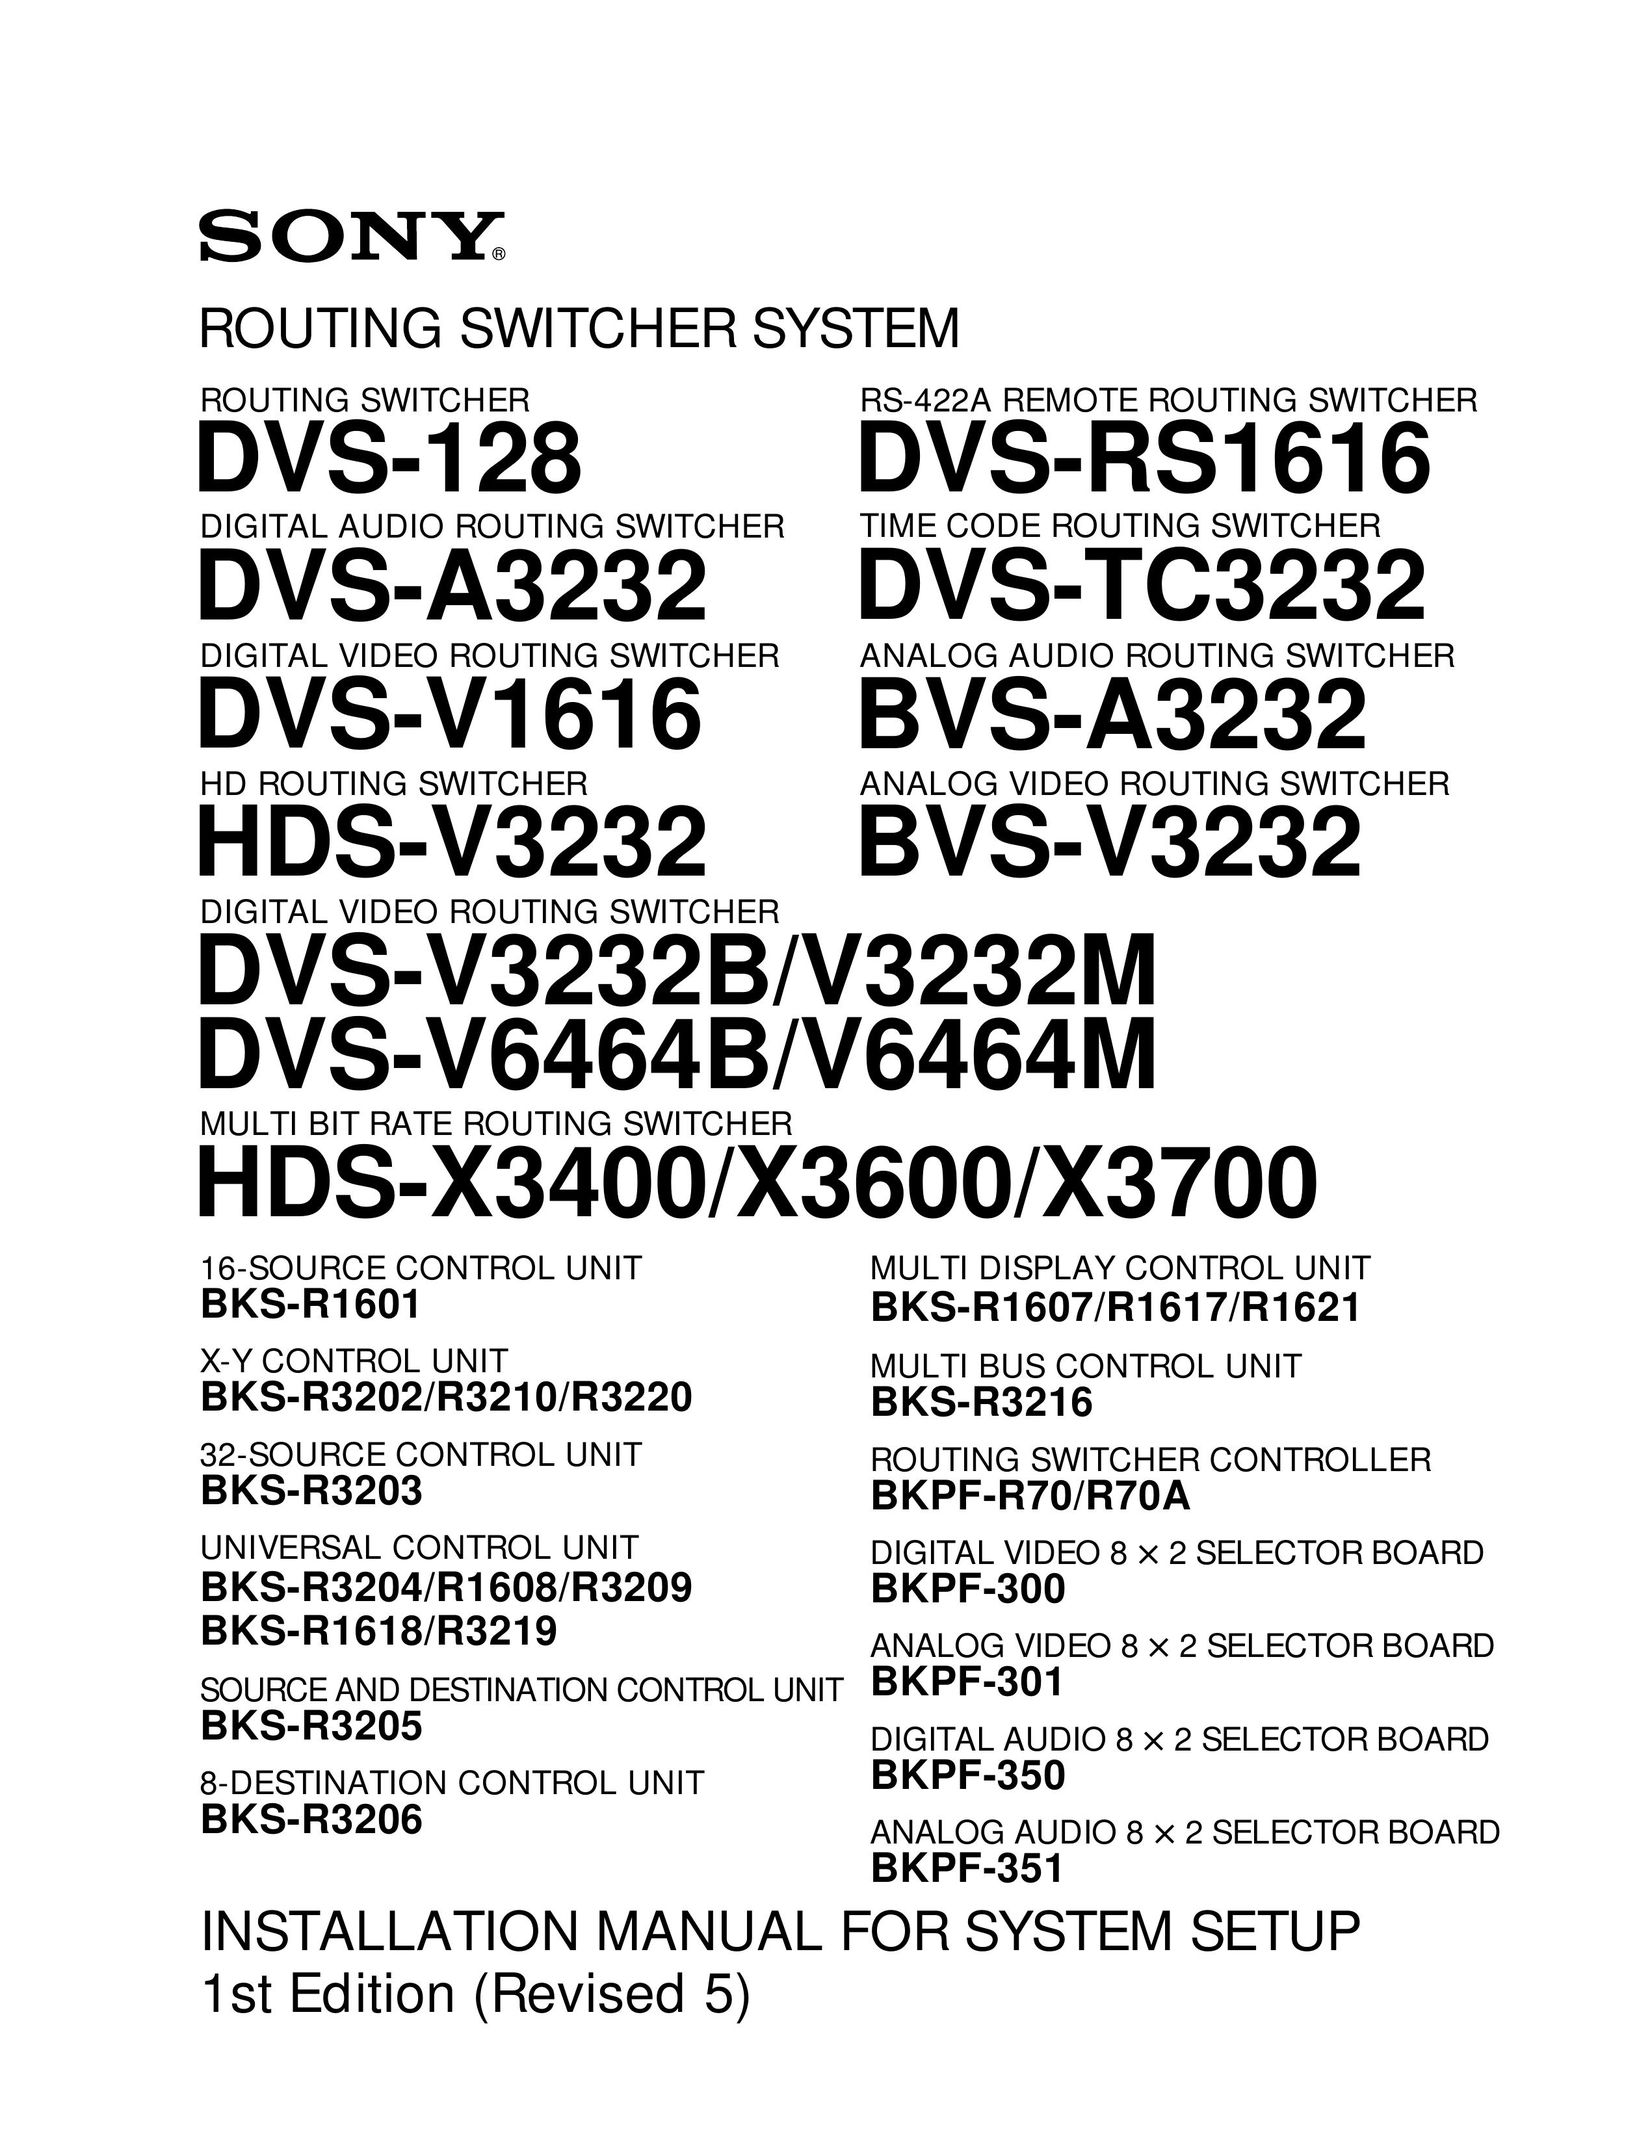 Sony DVS-128 Switch User Manual